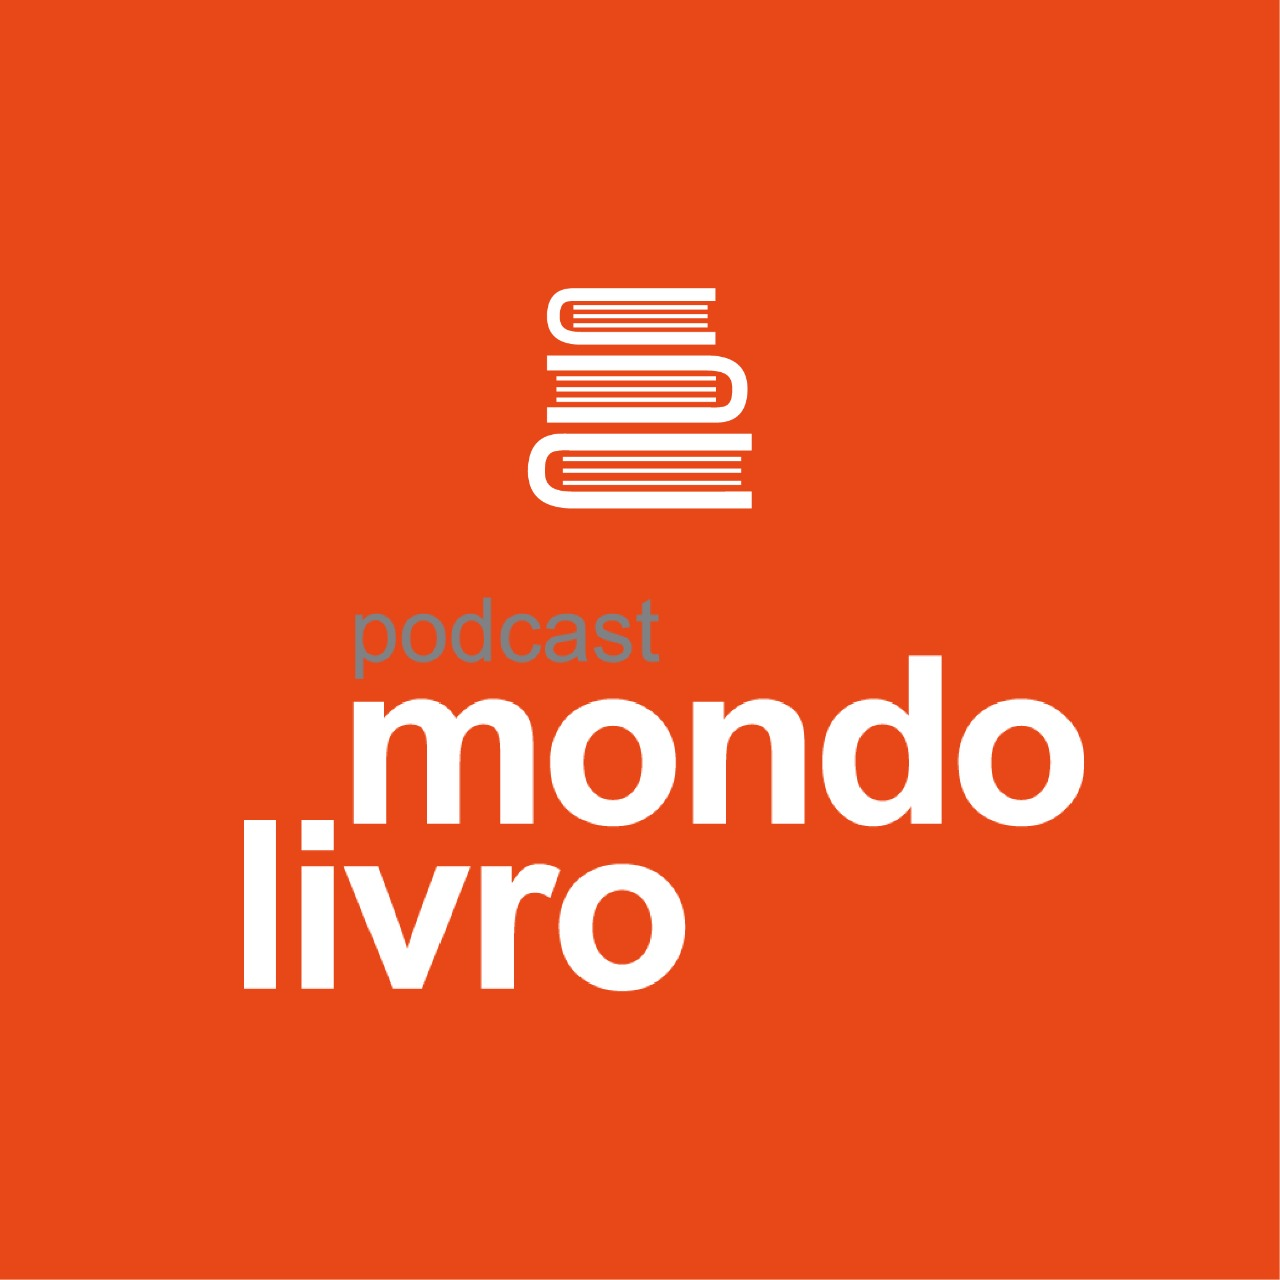 Mondolivro Podcast - Tom Farias no Mondolivro Podcast